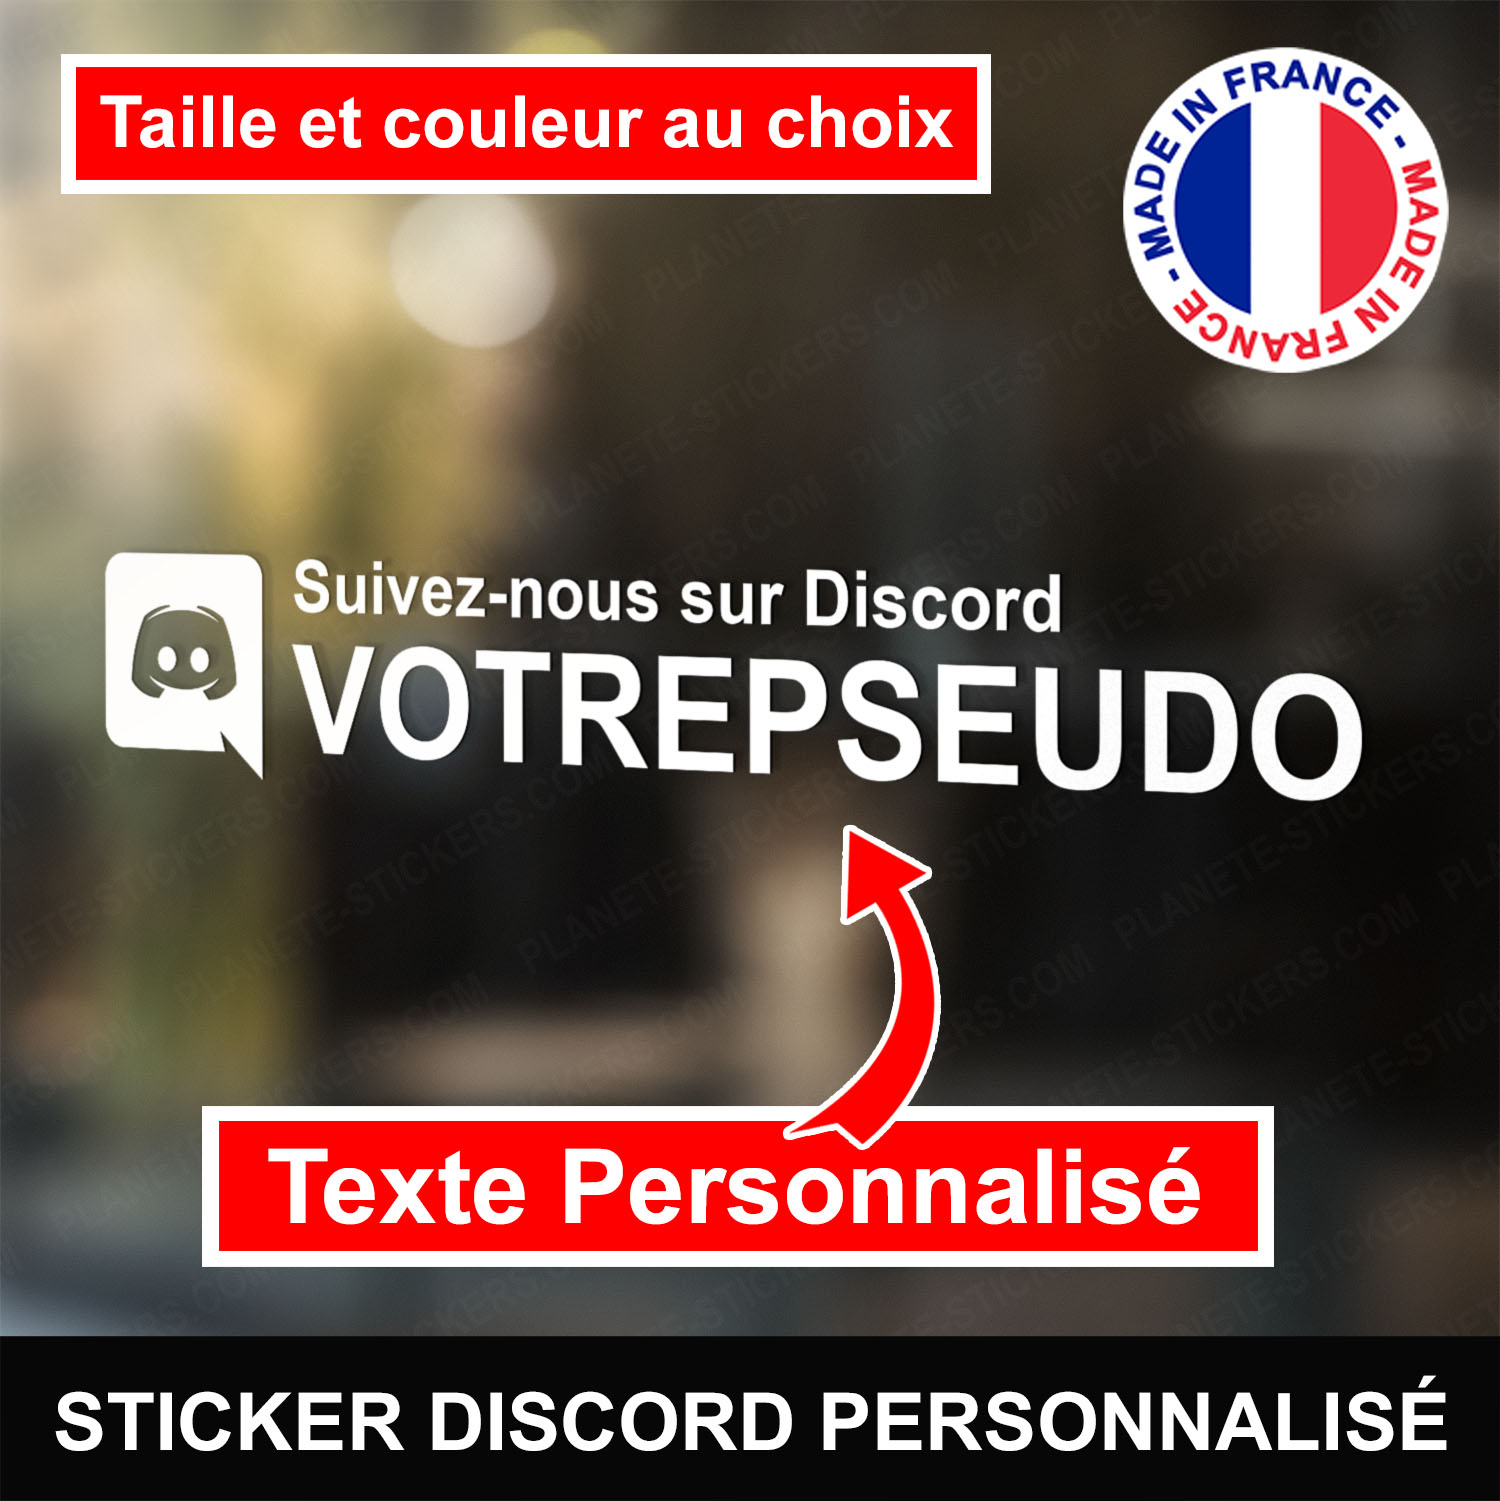 ref4discord-stickers-discord-personnalisé-autocollant-réseaux-sociaux-vitrophanie-discord-logo-sticker-vitrine-vitre-mur-voiture-moto